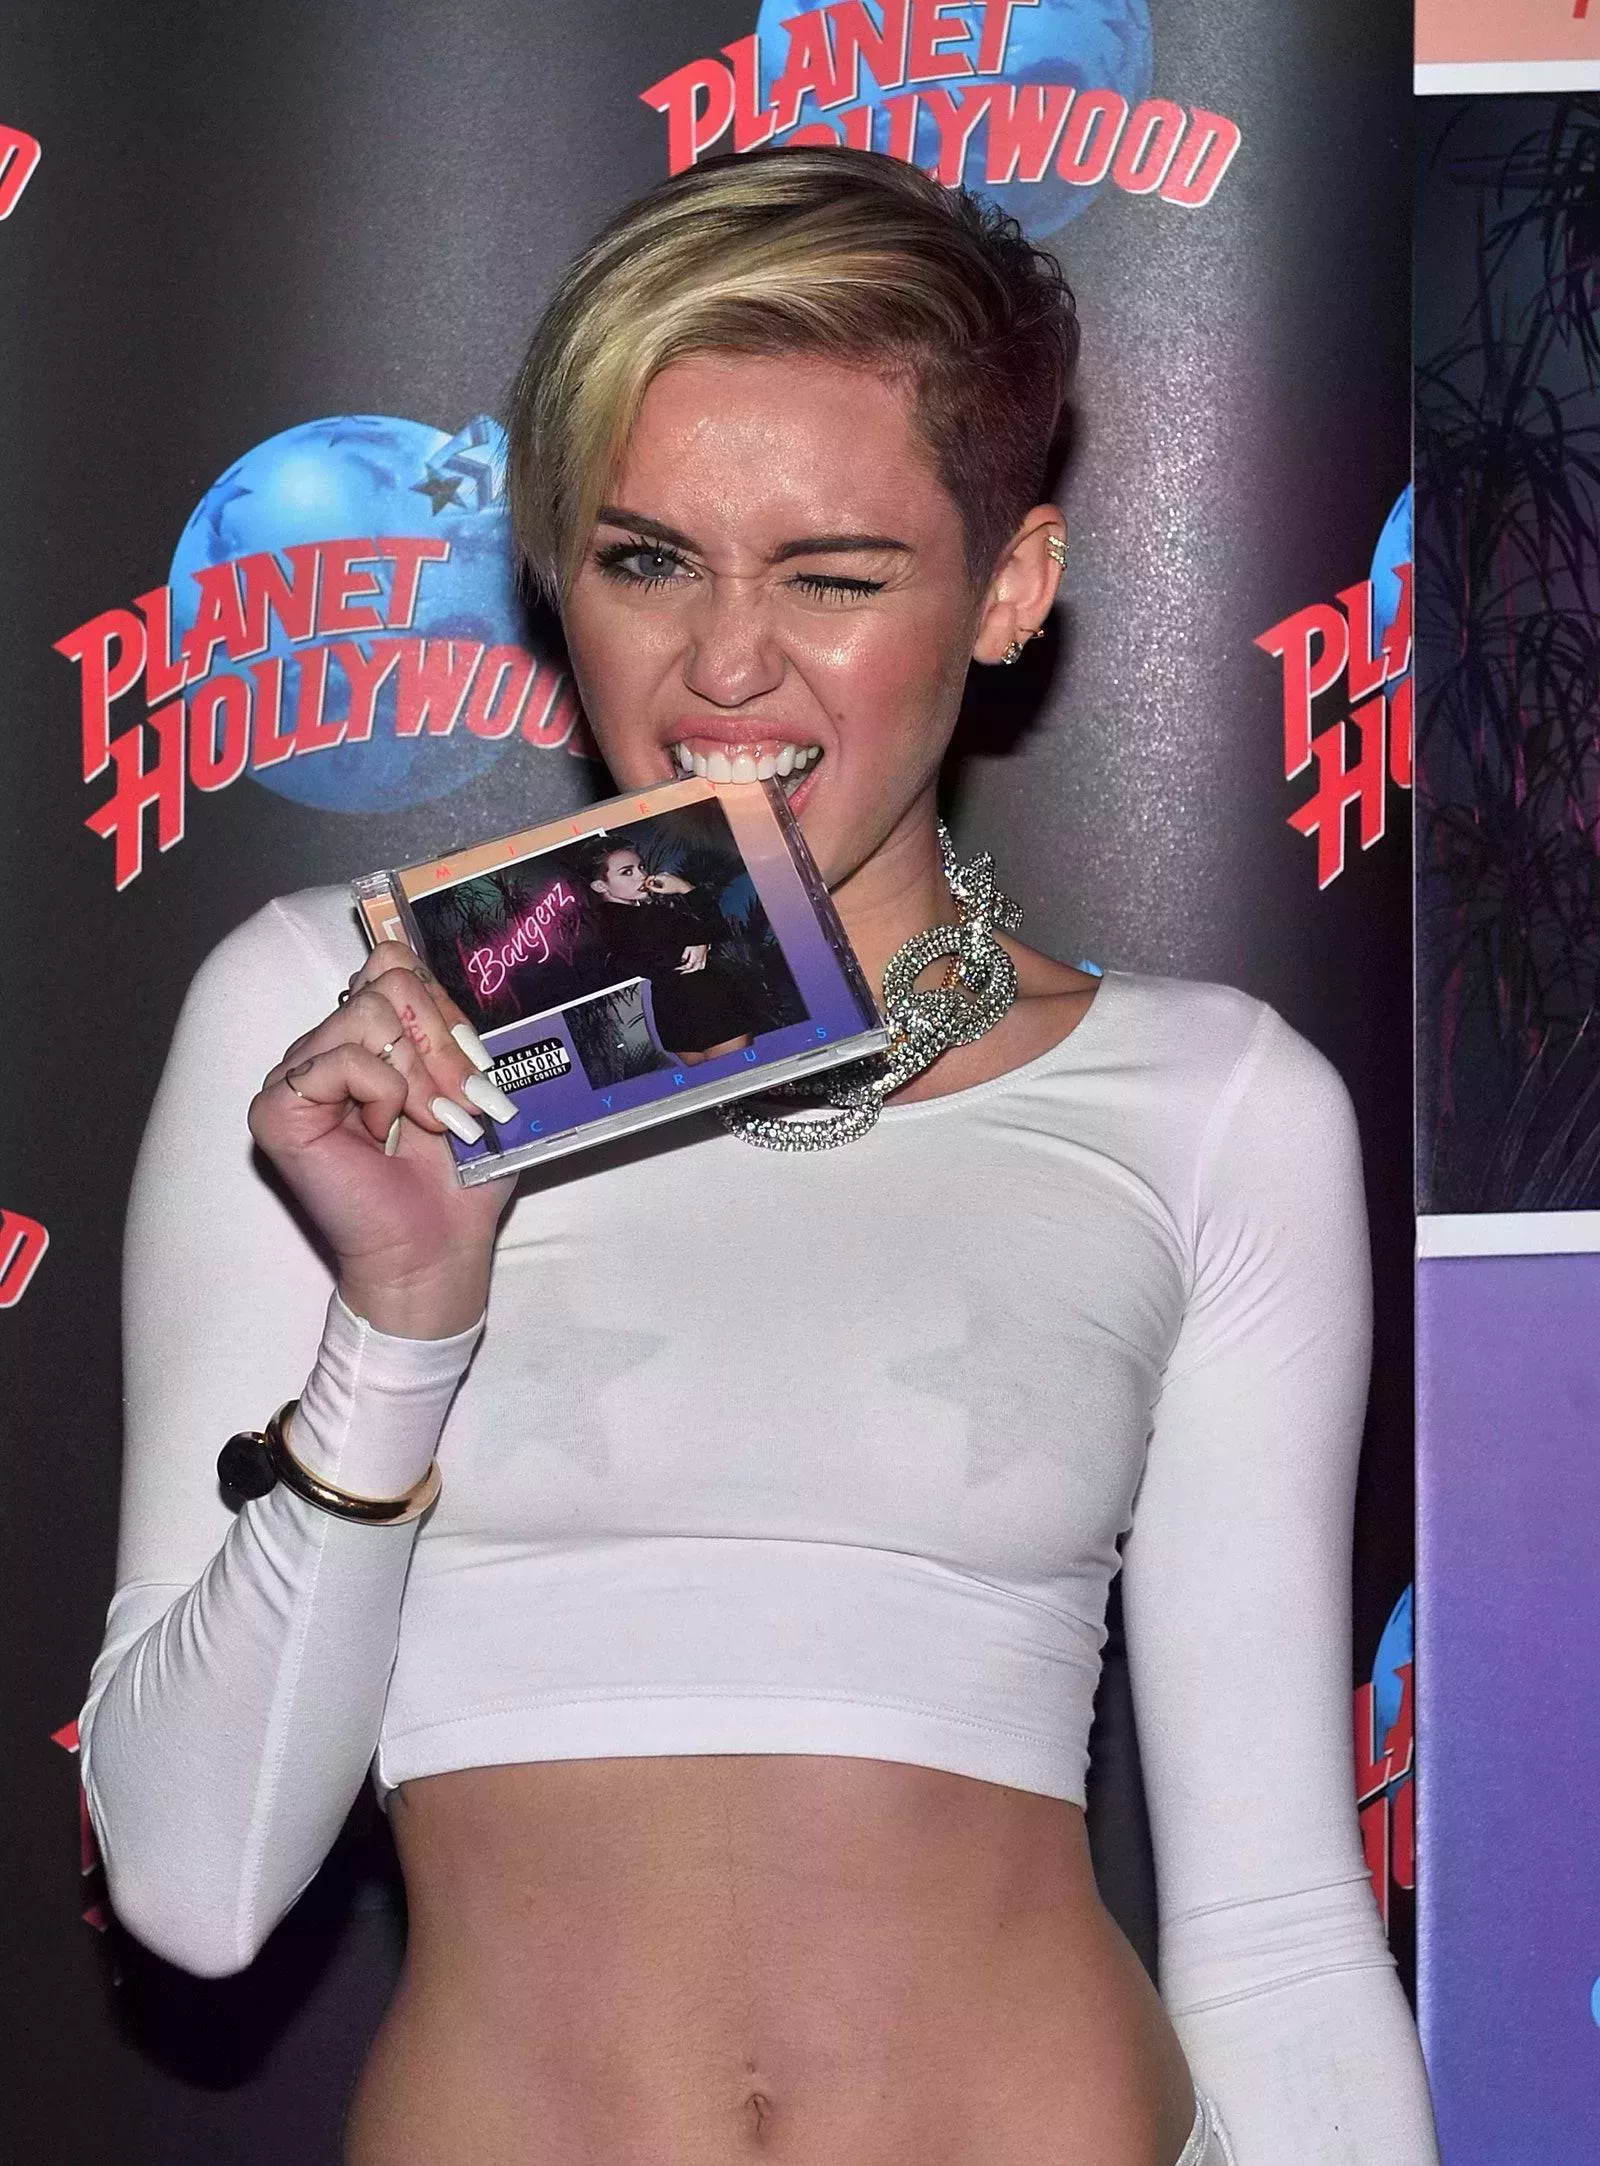 Todo lo que Miley Cyrus ha dicho sobre ser una ex estrella infantil